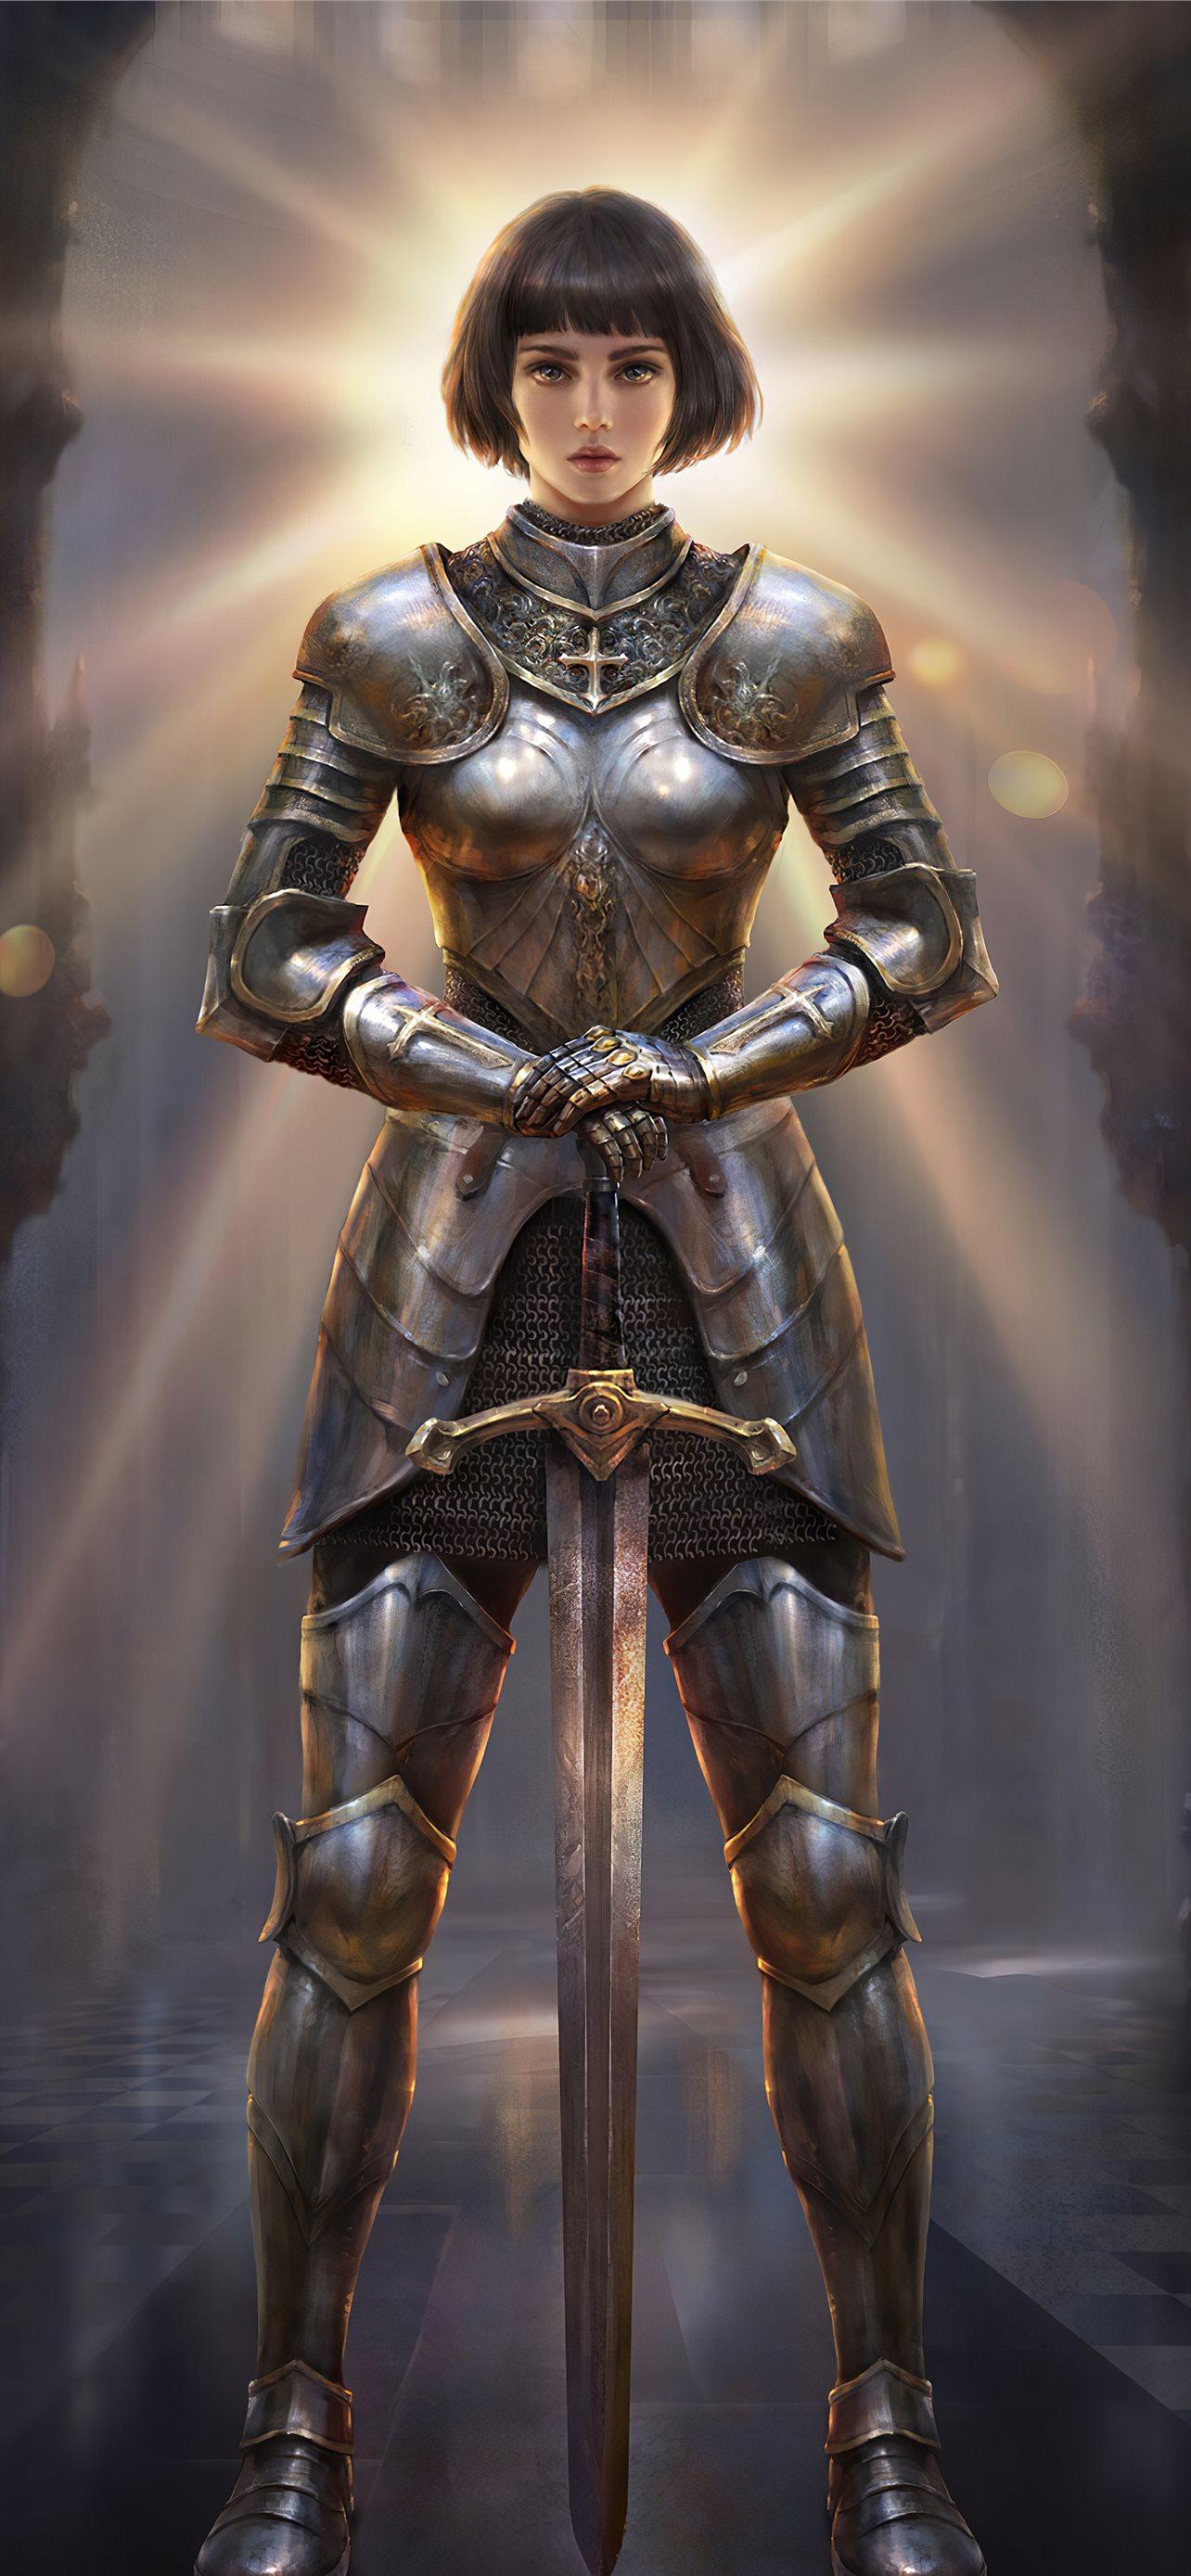 joan of arc in battle wallpaper